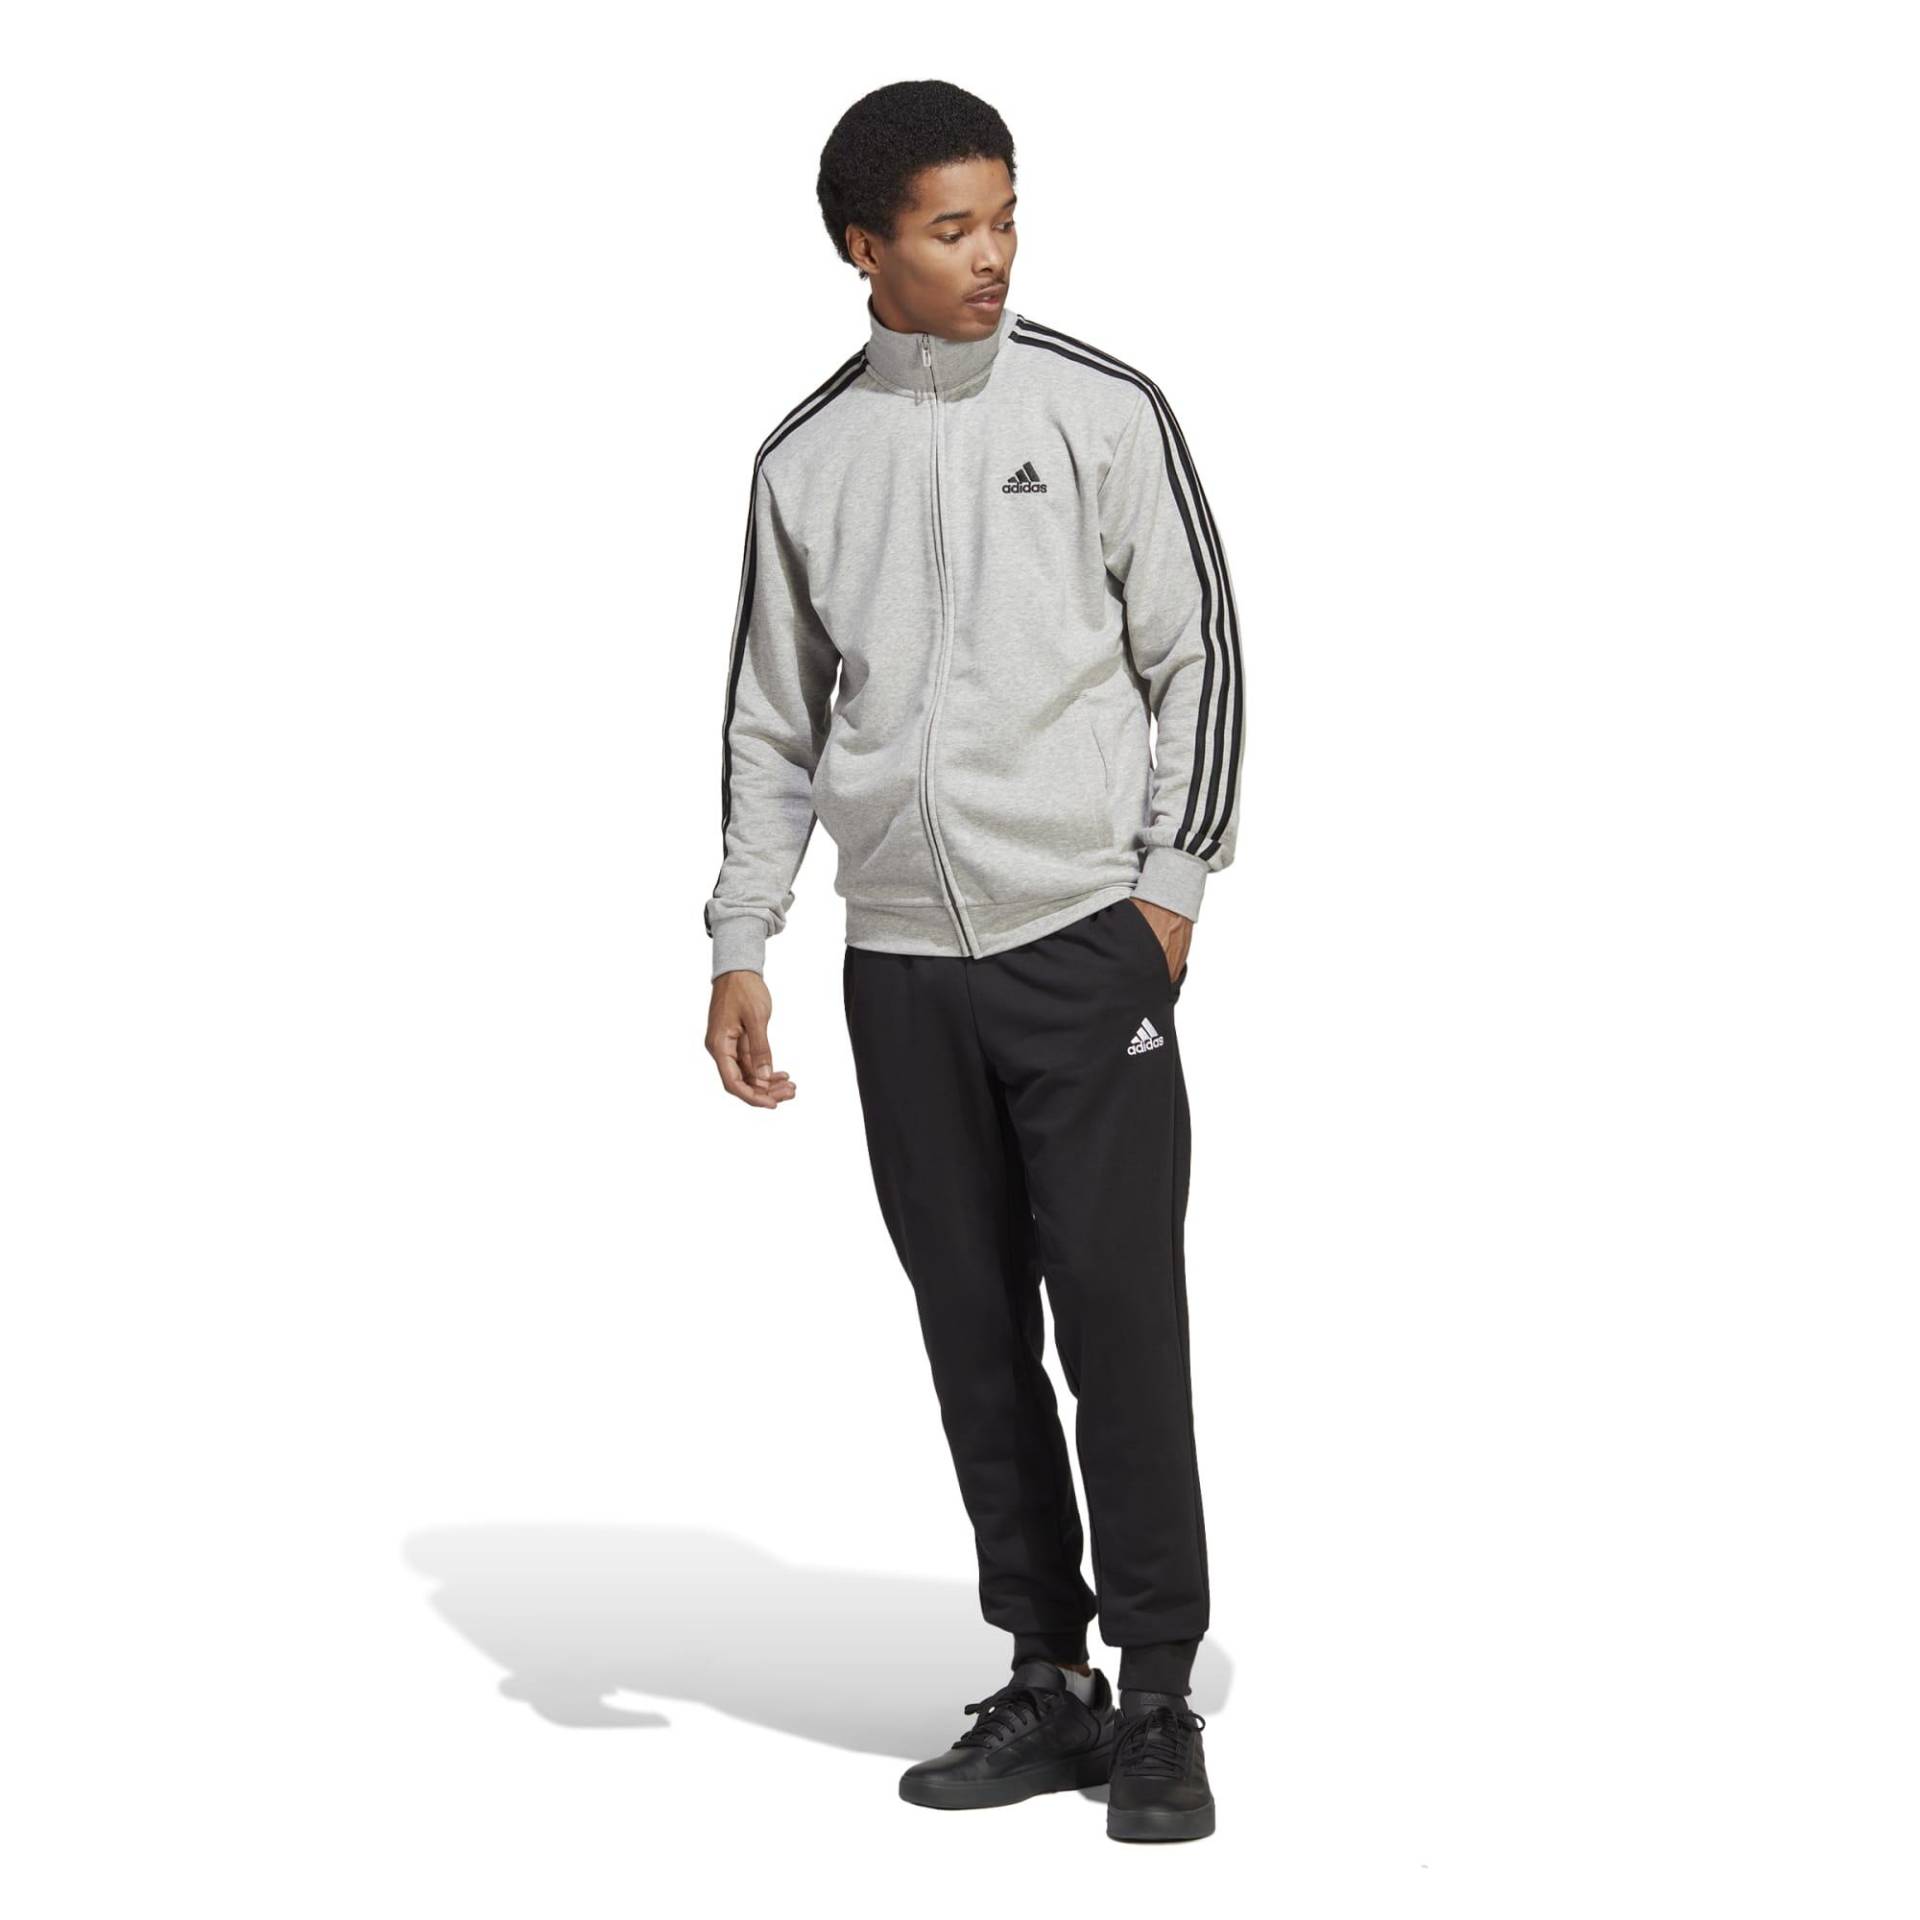 Adidas Trainingsanzug Herren - grau/schwarz von Adidas